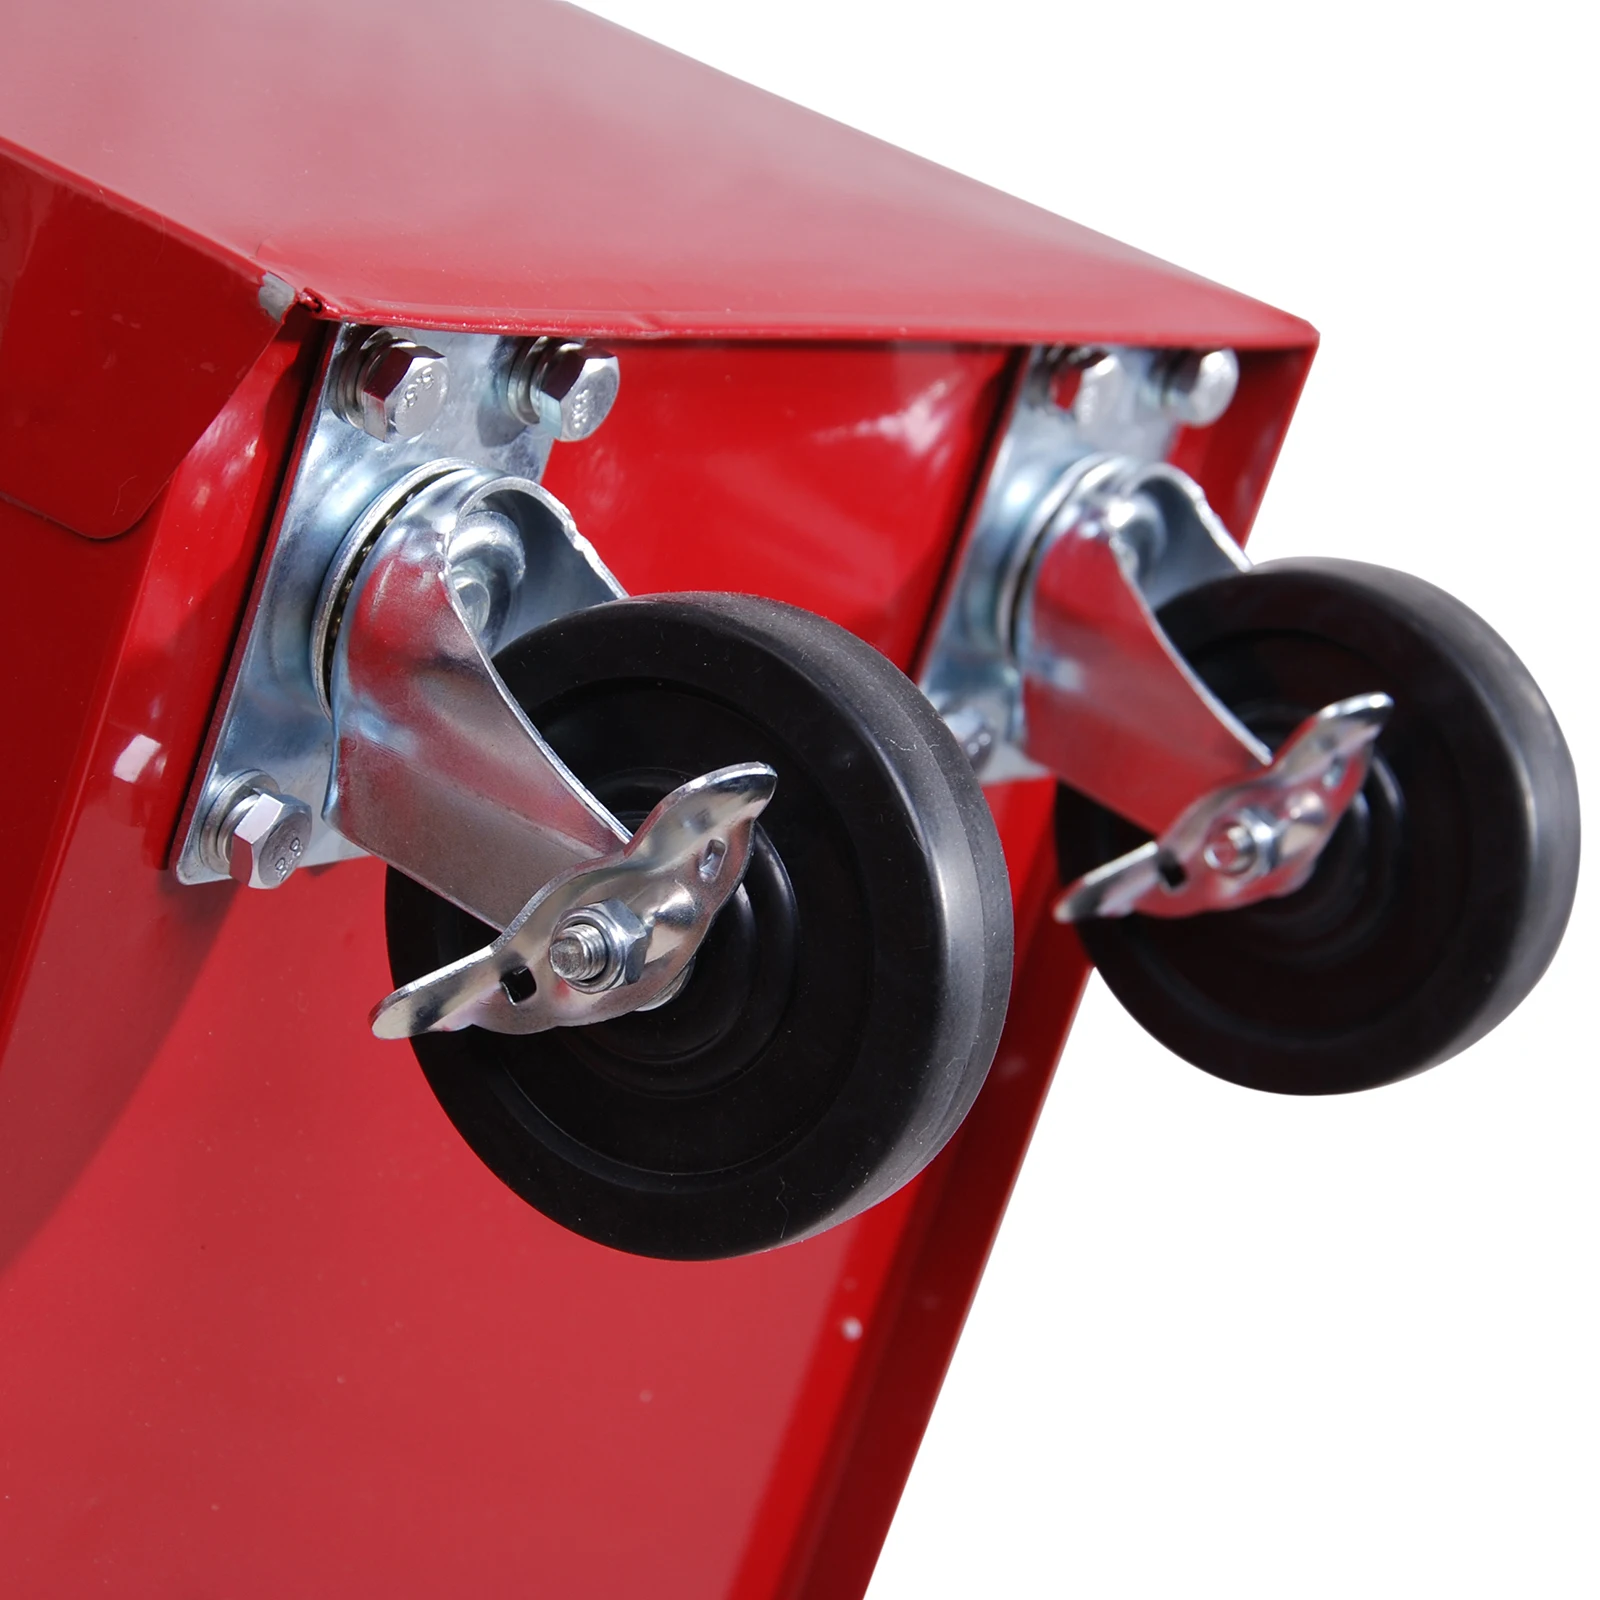 HOMCOM Carrito de taller para herramientas, con ruedas, caja de herramientas con 5 cajones, 1 unidad, color rojo